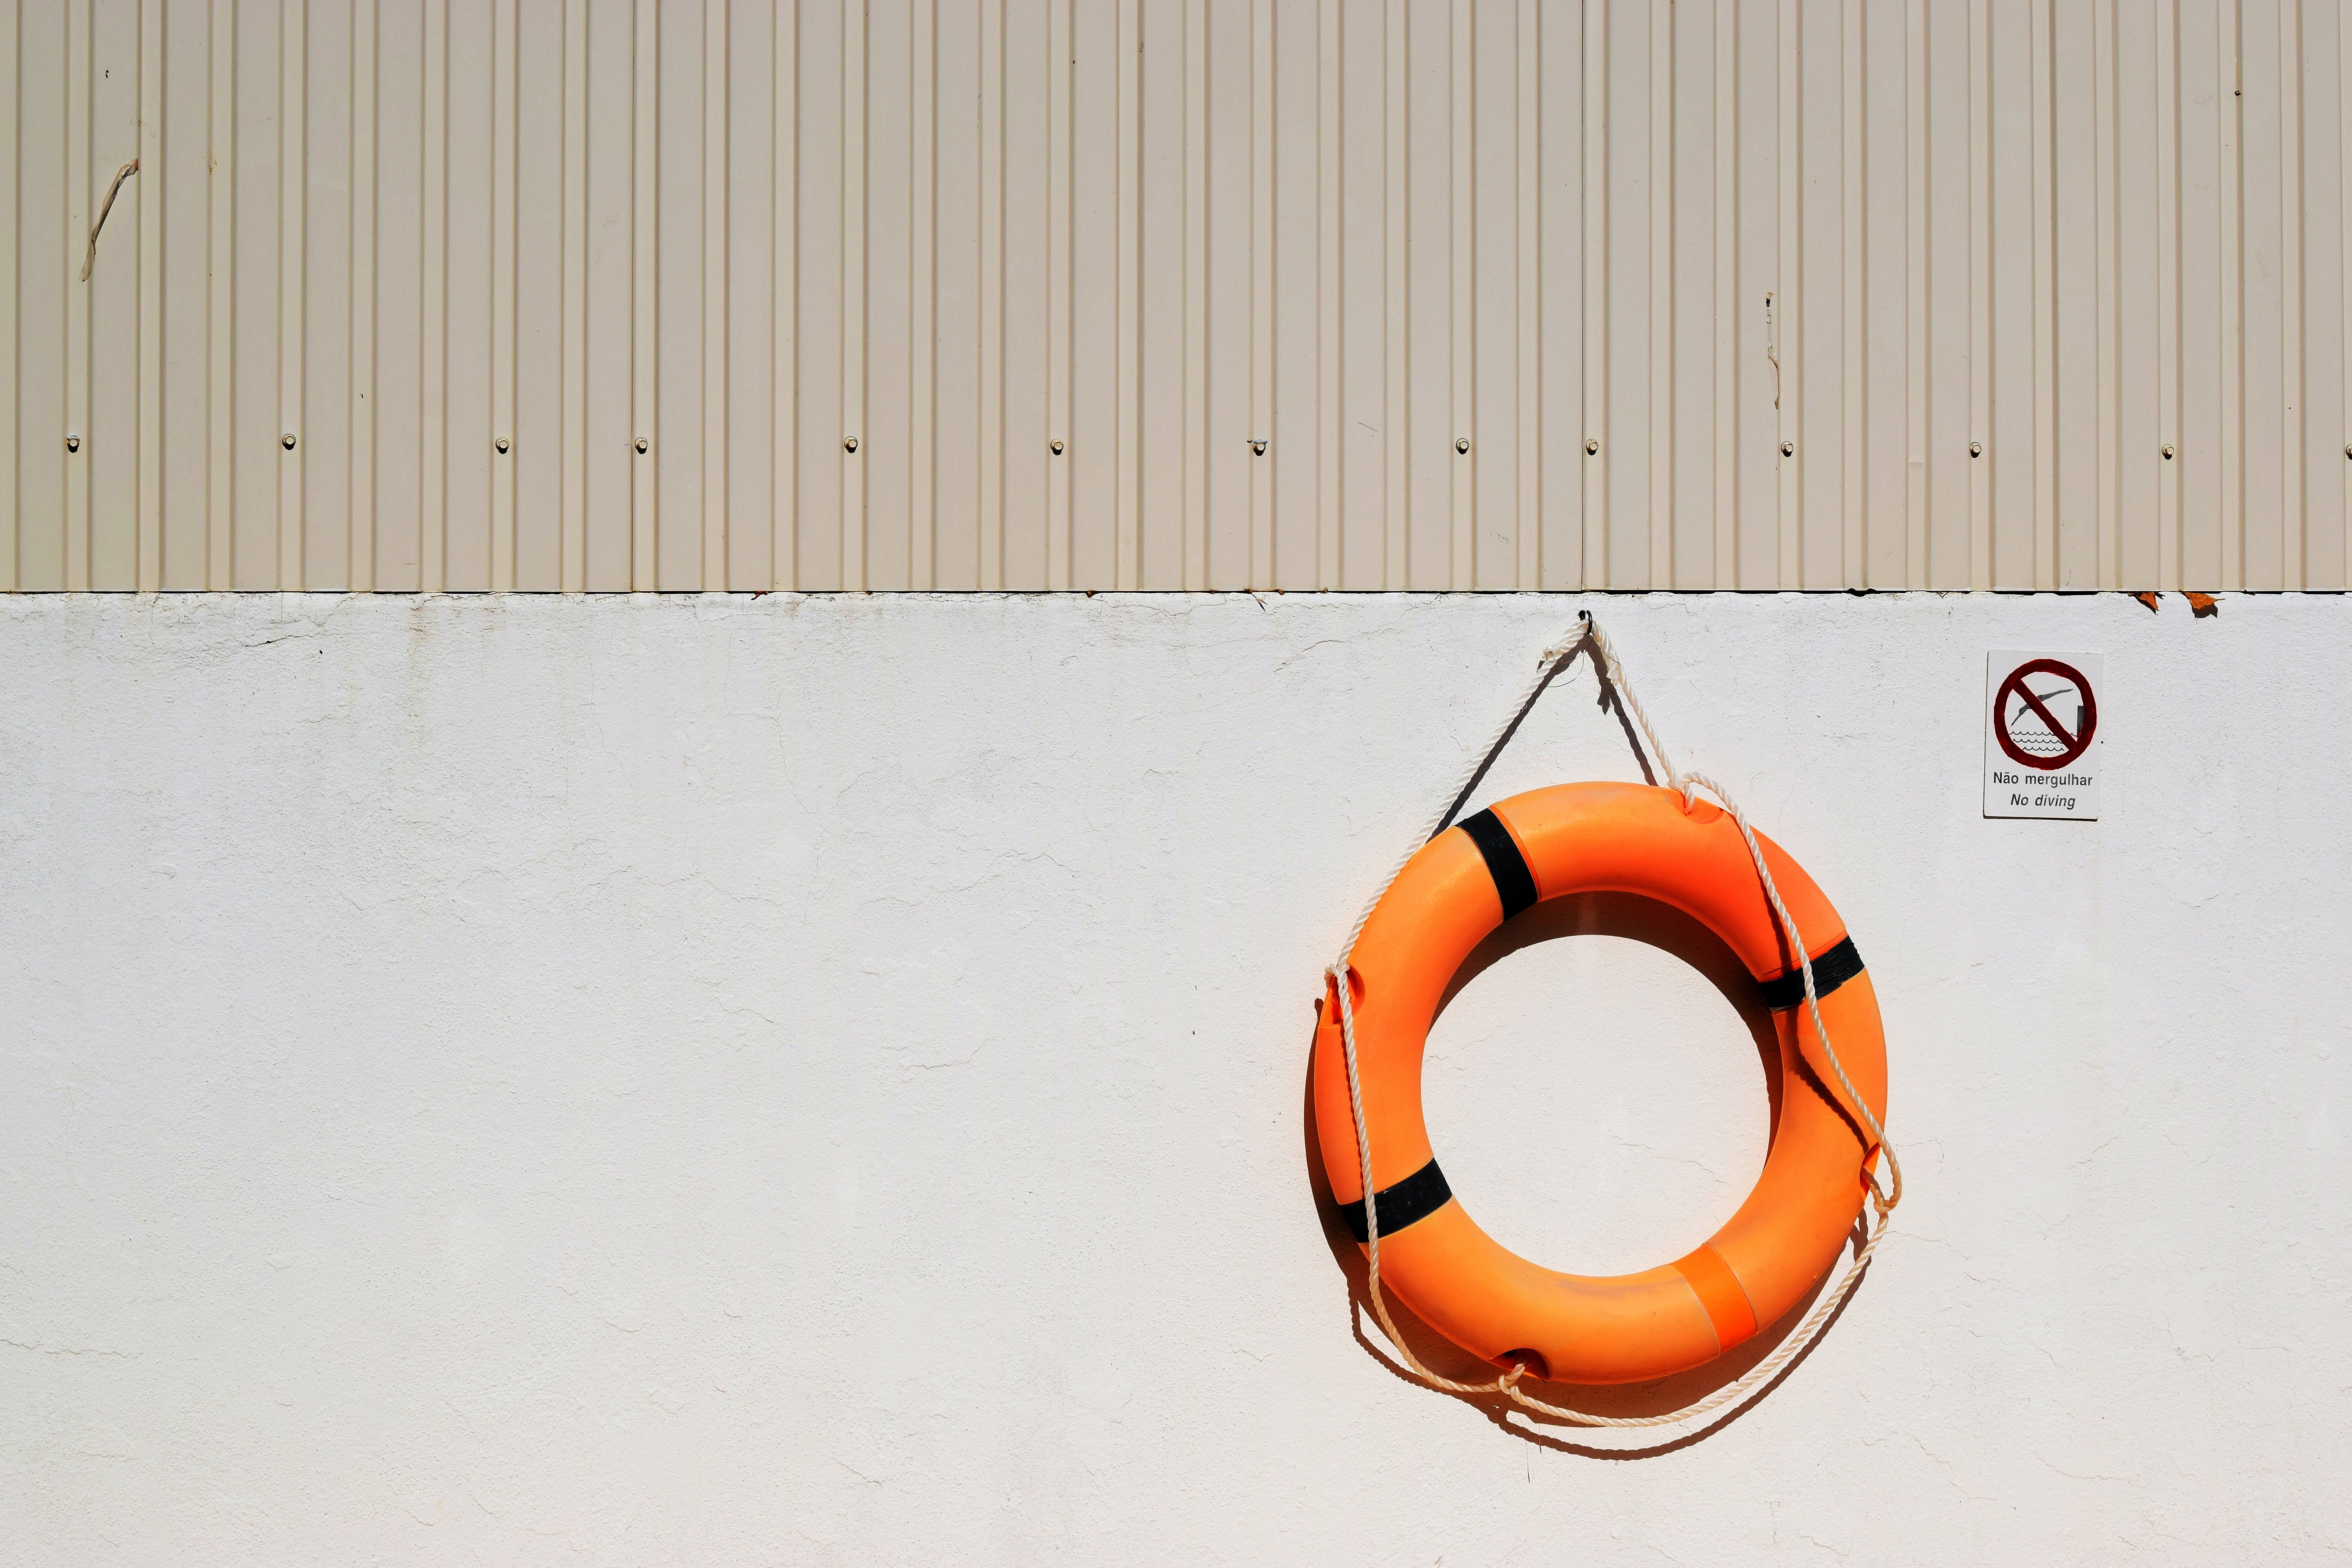 lifeguard-buoy-image